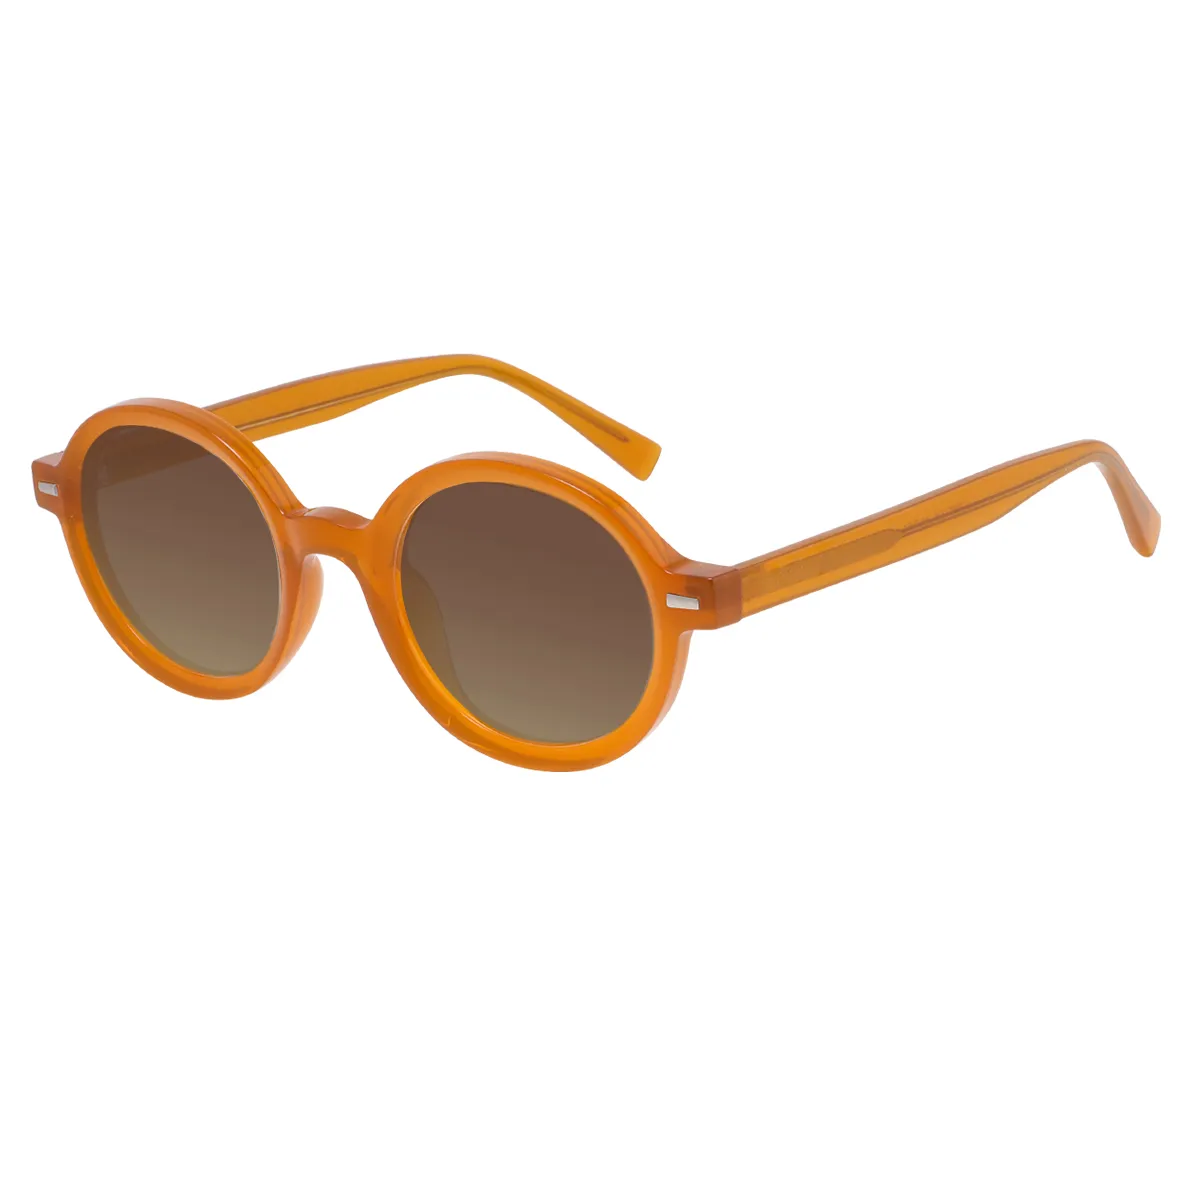 Elsy - Round Orange Sunglasses for Men & Women